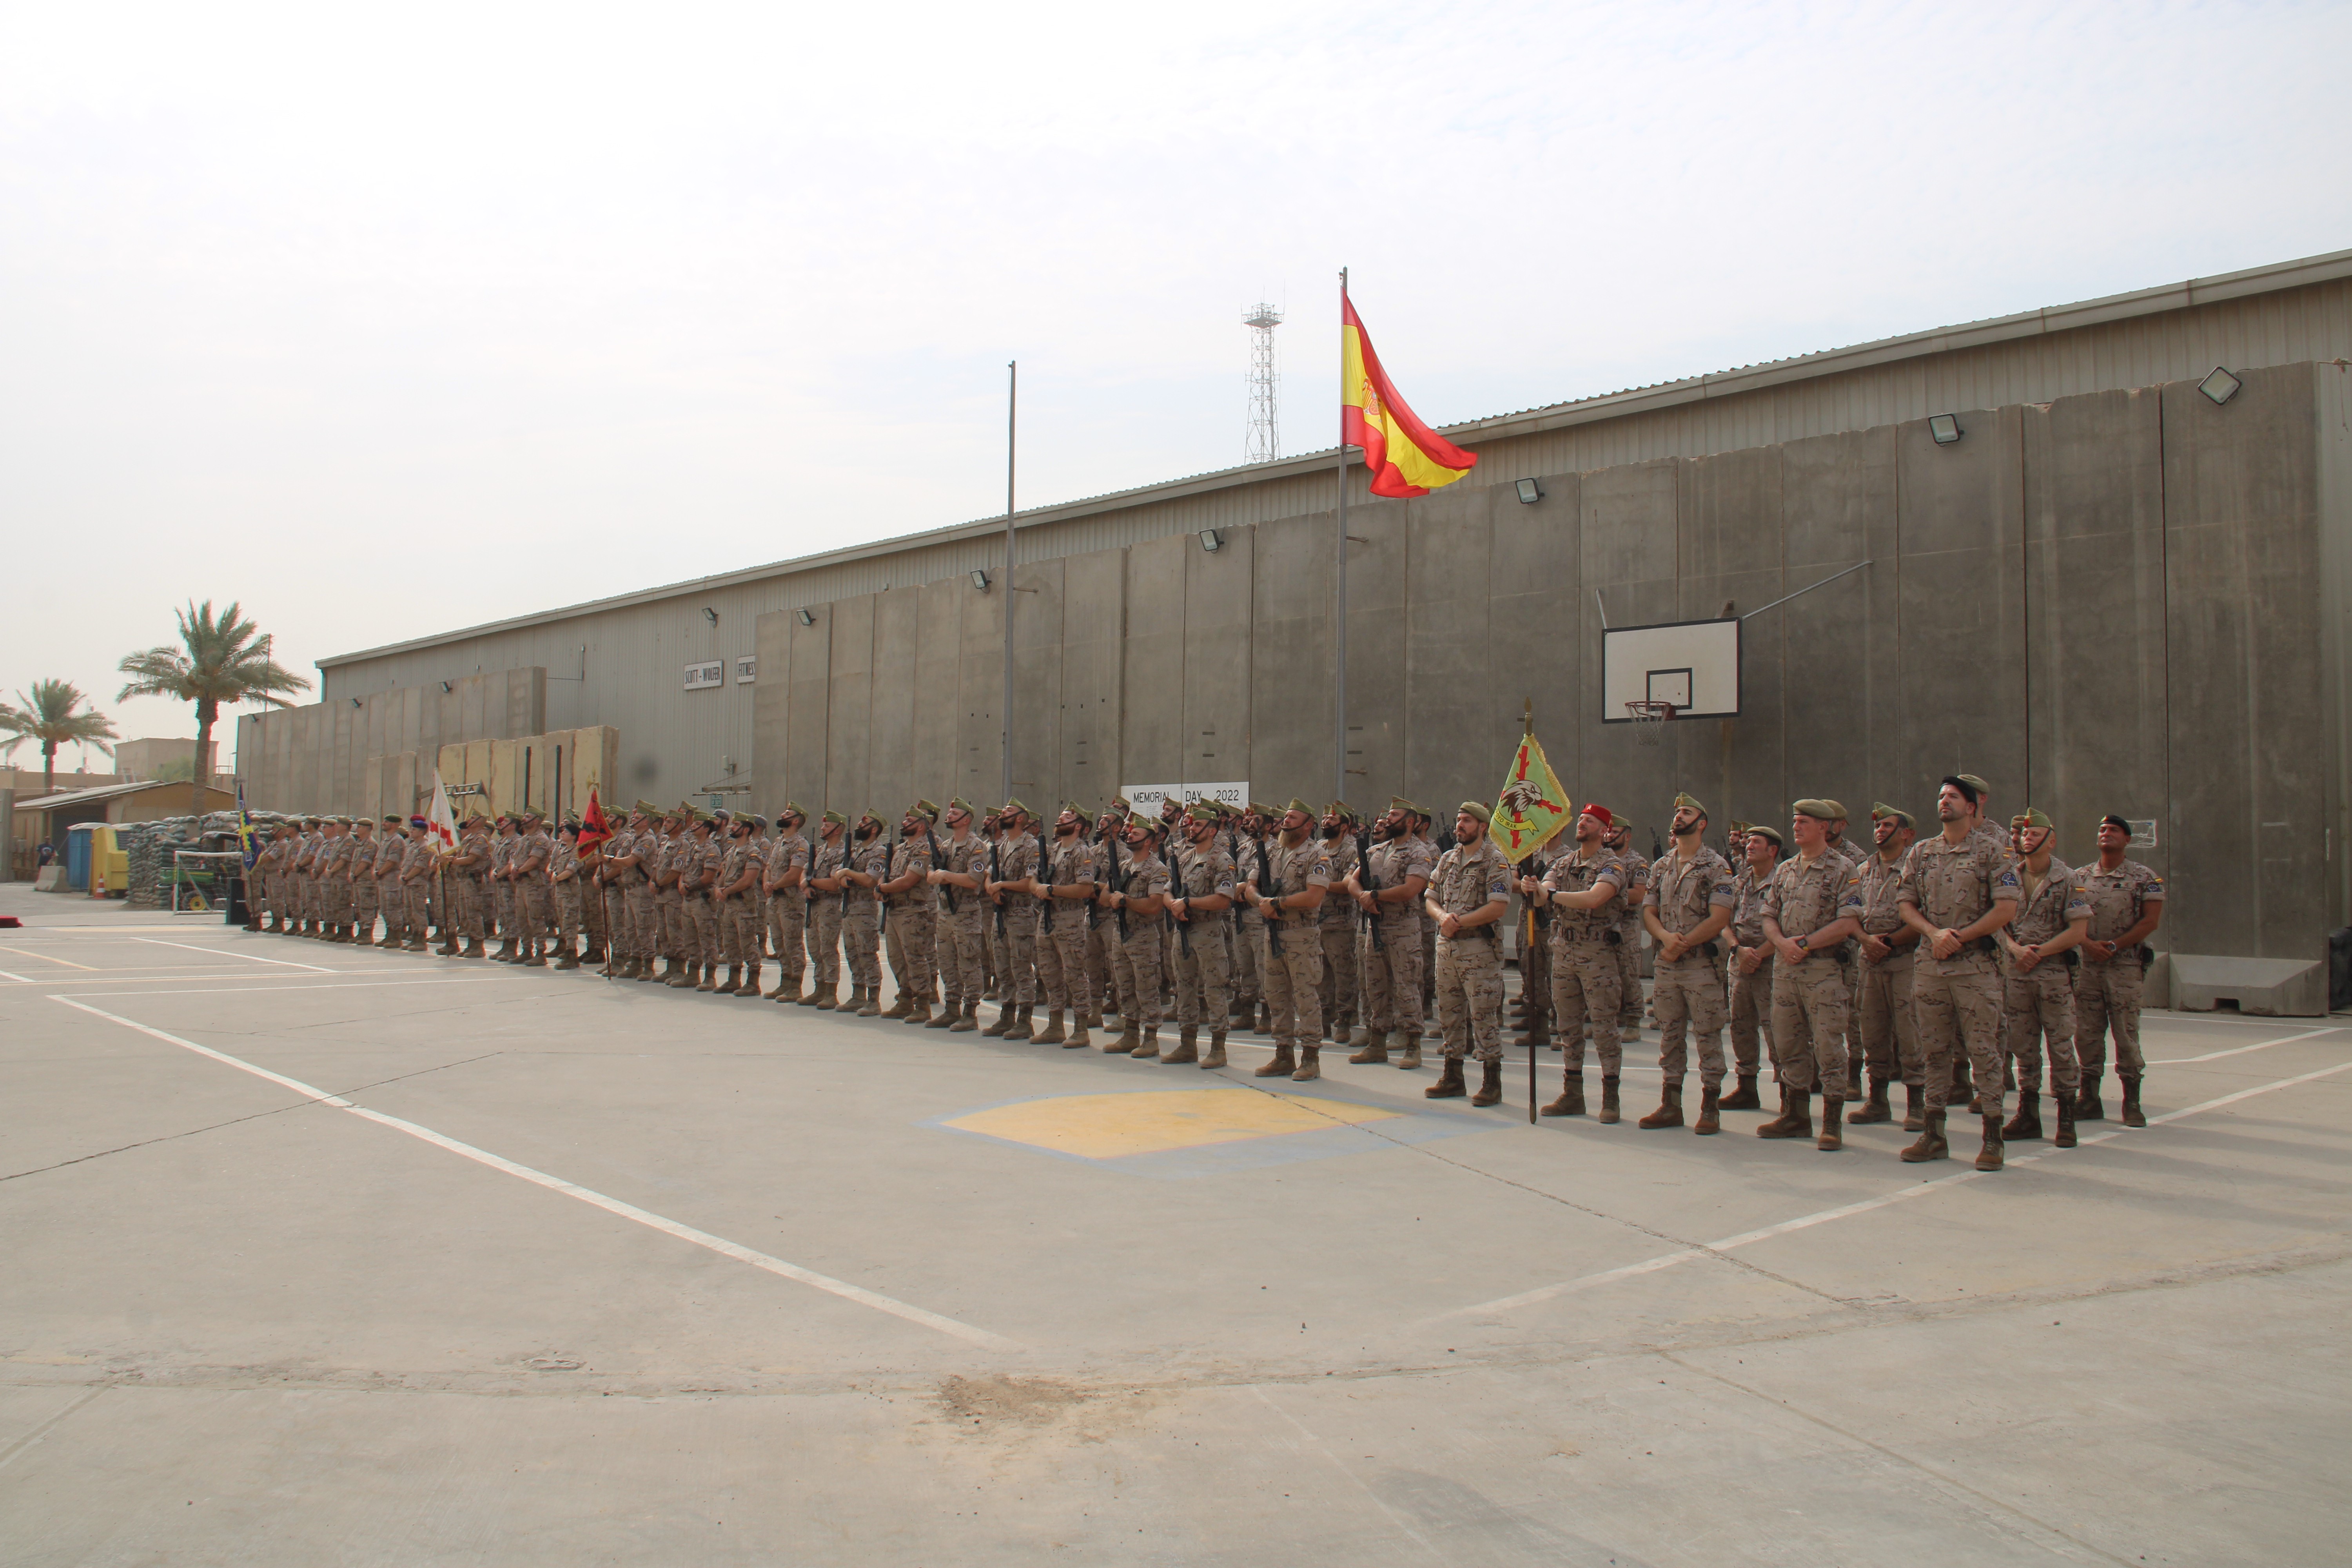 Formación del contingente español